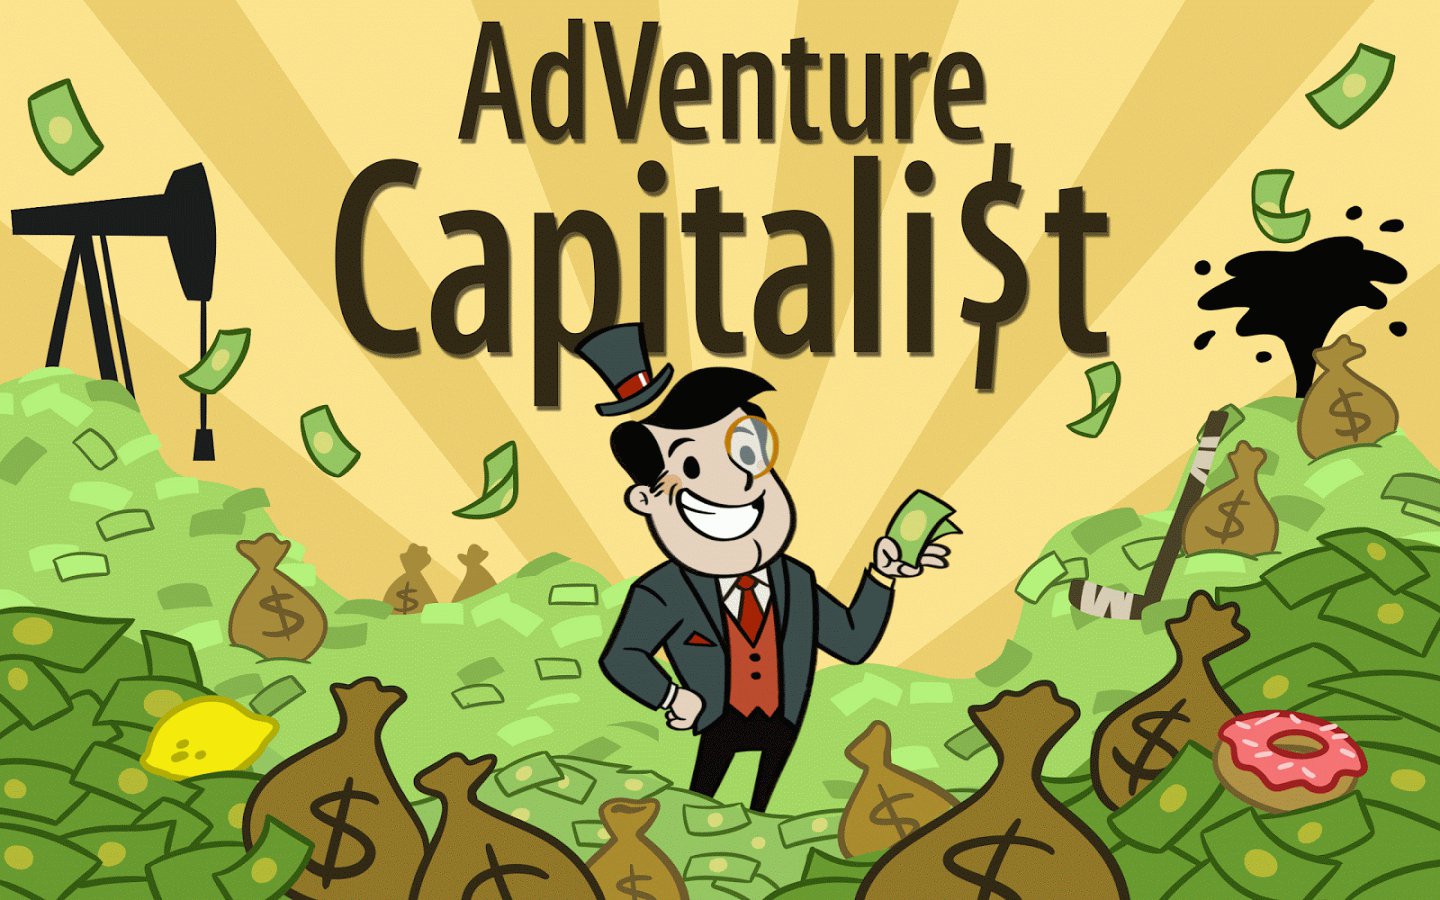 Money adventure. Игра Adventure Capitalist. Картина Adventure Capitalist. Venture Capitalists. Capitalist Adventure геймплей.